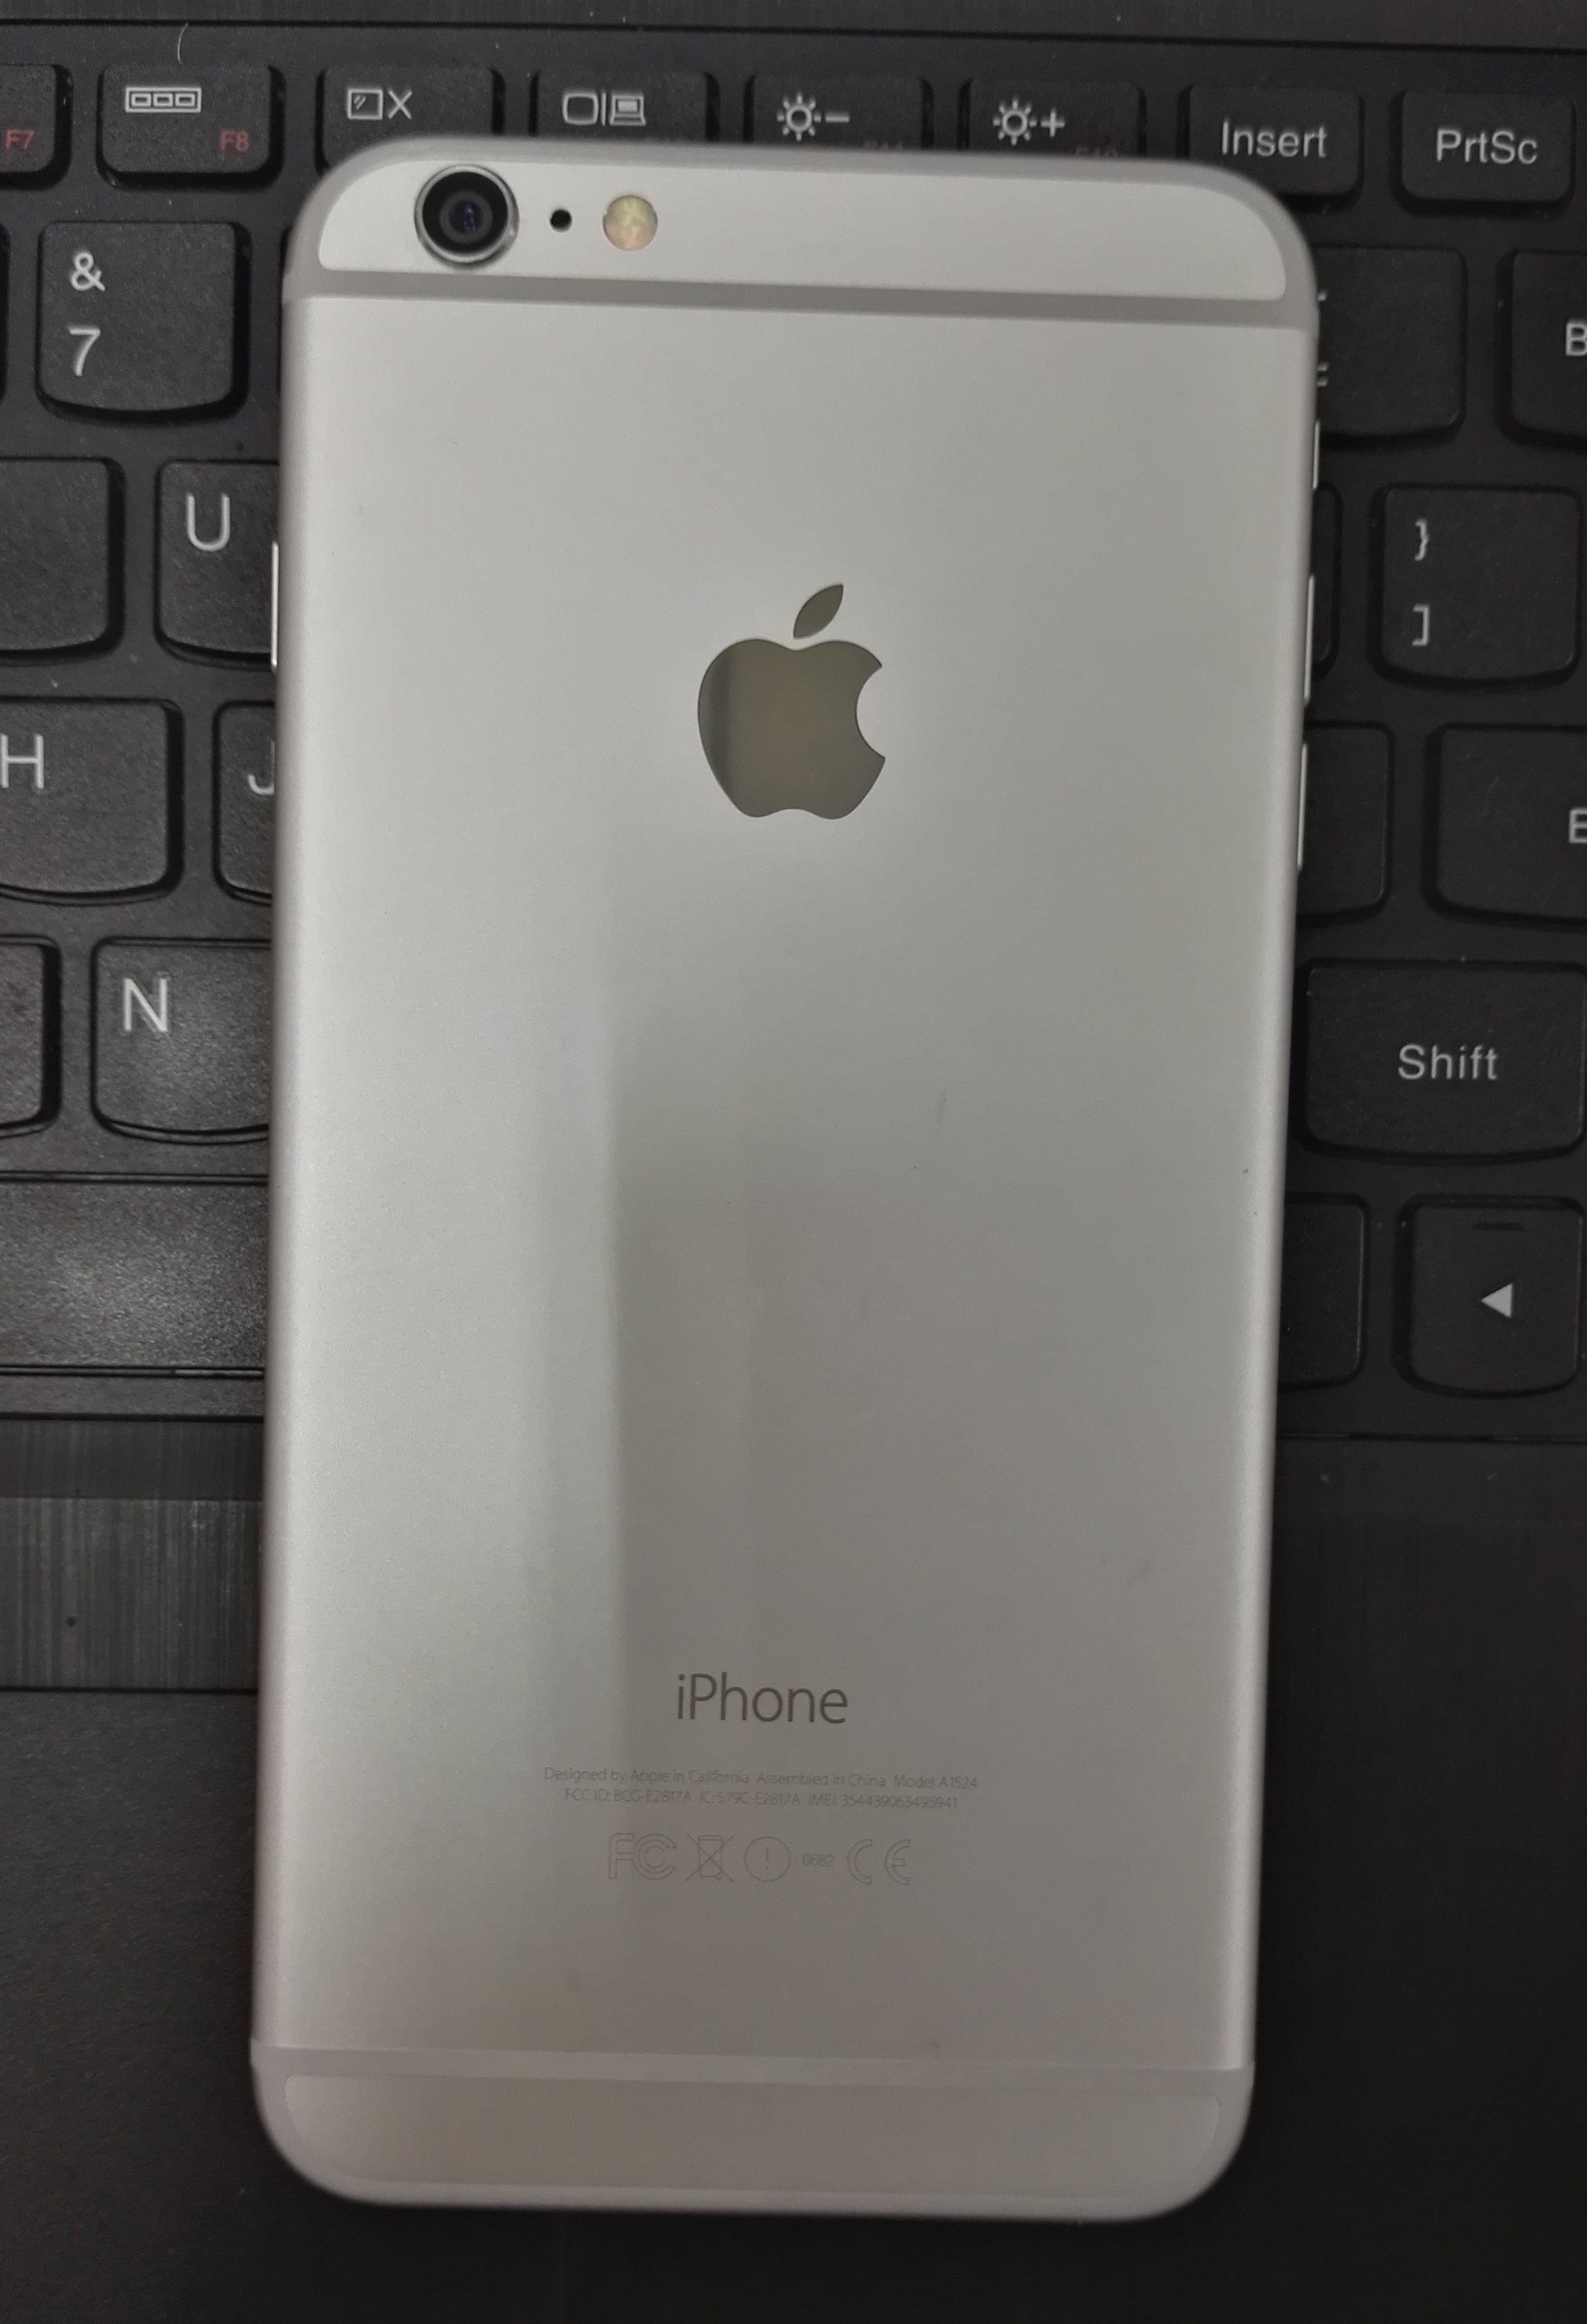 资讯:苹果停产iPhone6/6plus,曾遭质疑,首款大屏,出货量达2.5亿部__凤凰网